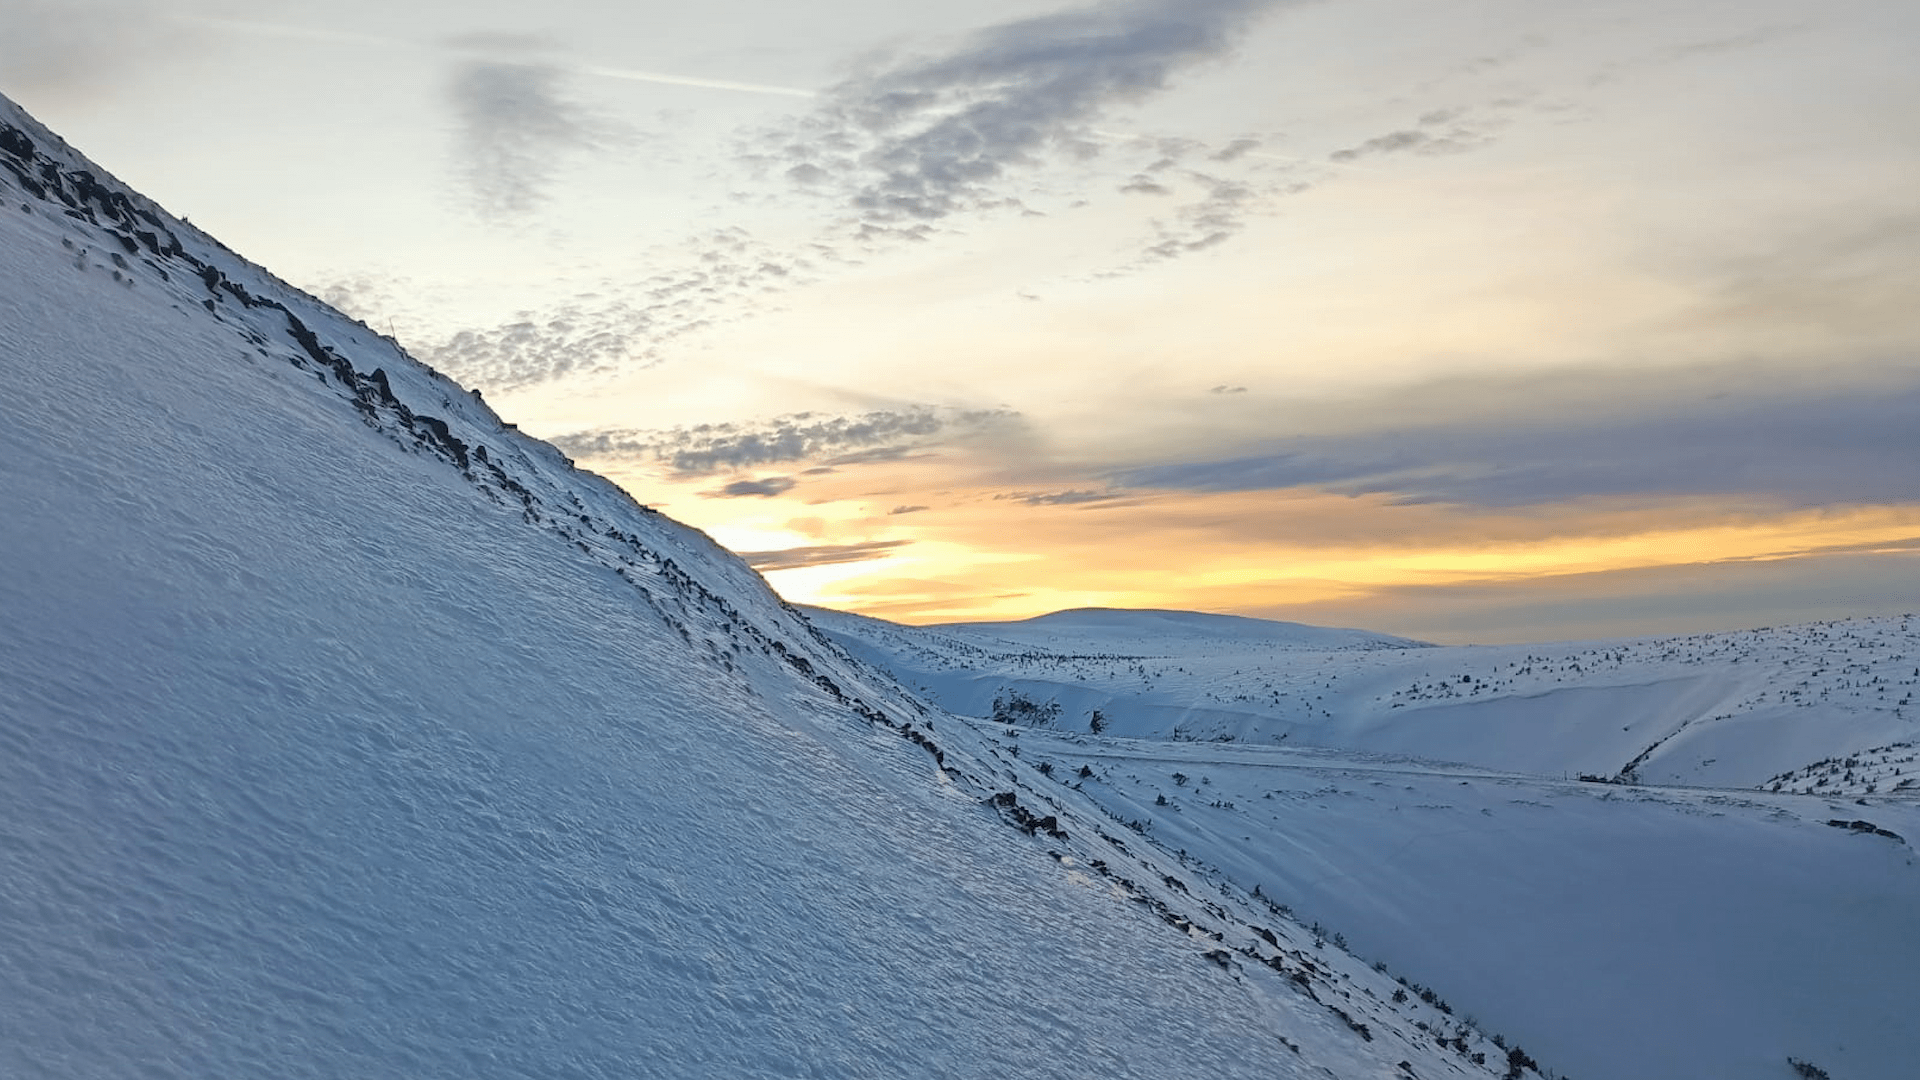 Záchranná akce po pádu dvou mužů ze severního svahu Sněžky 30. ledna 2024 